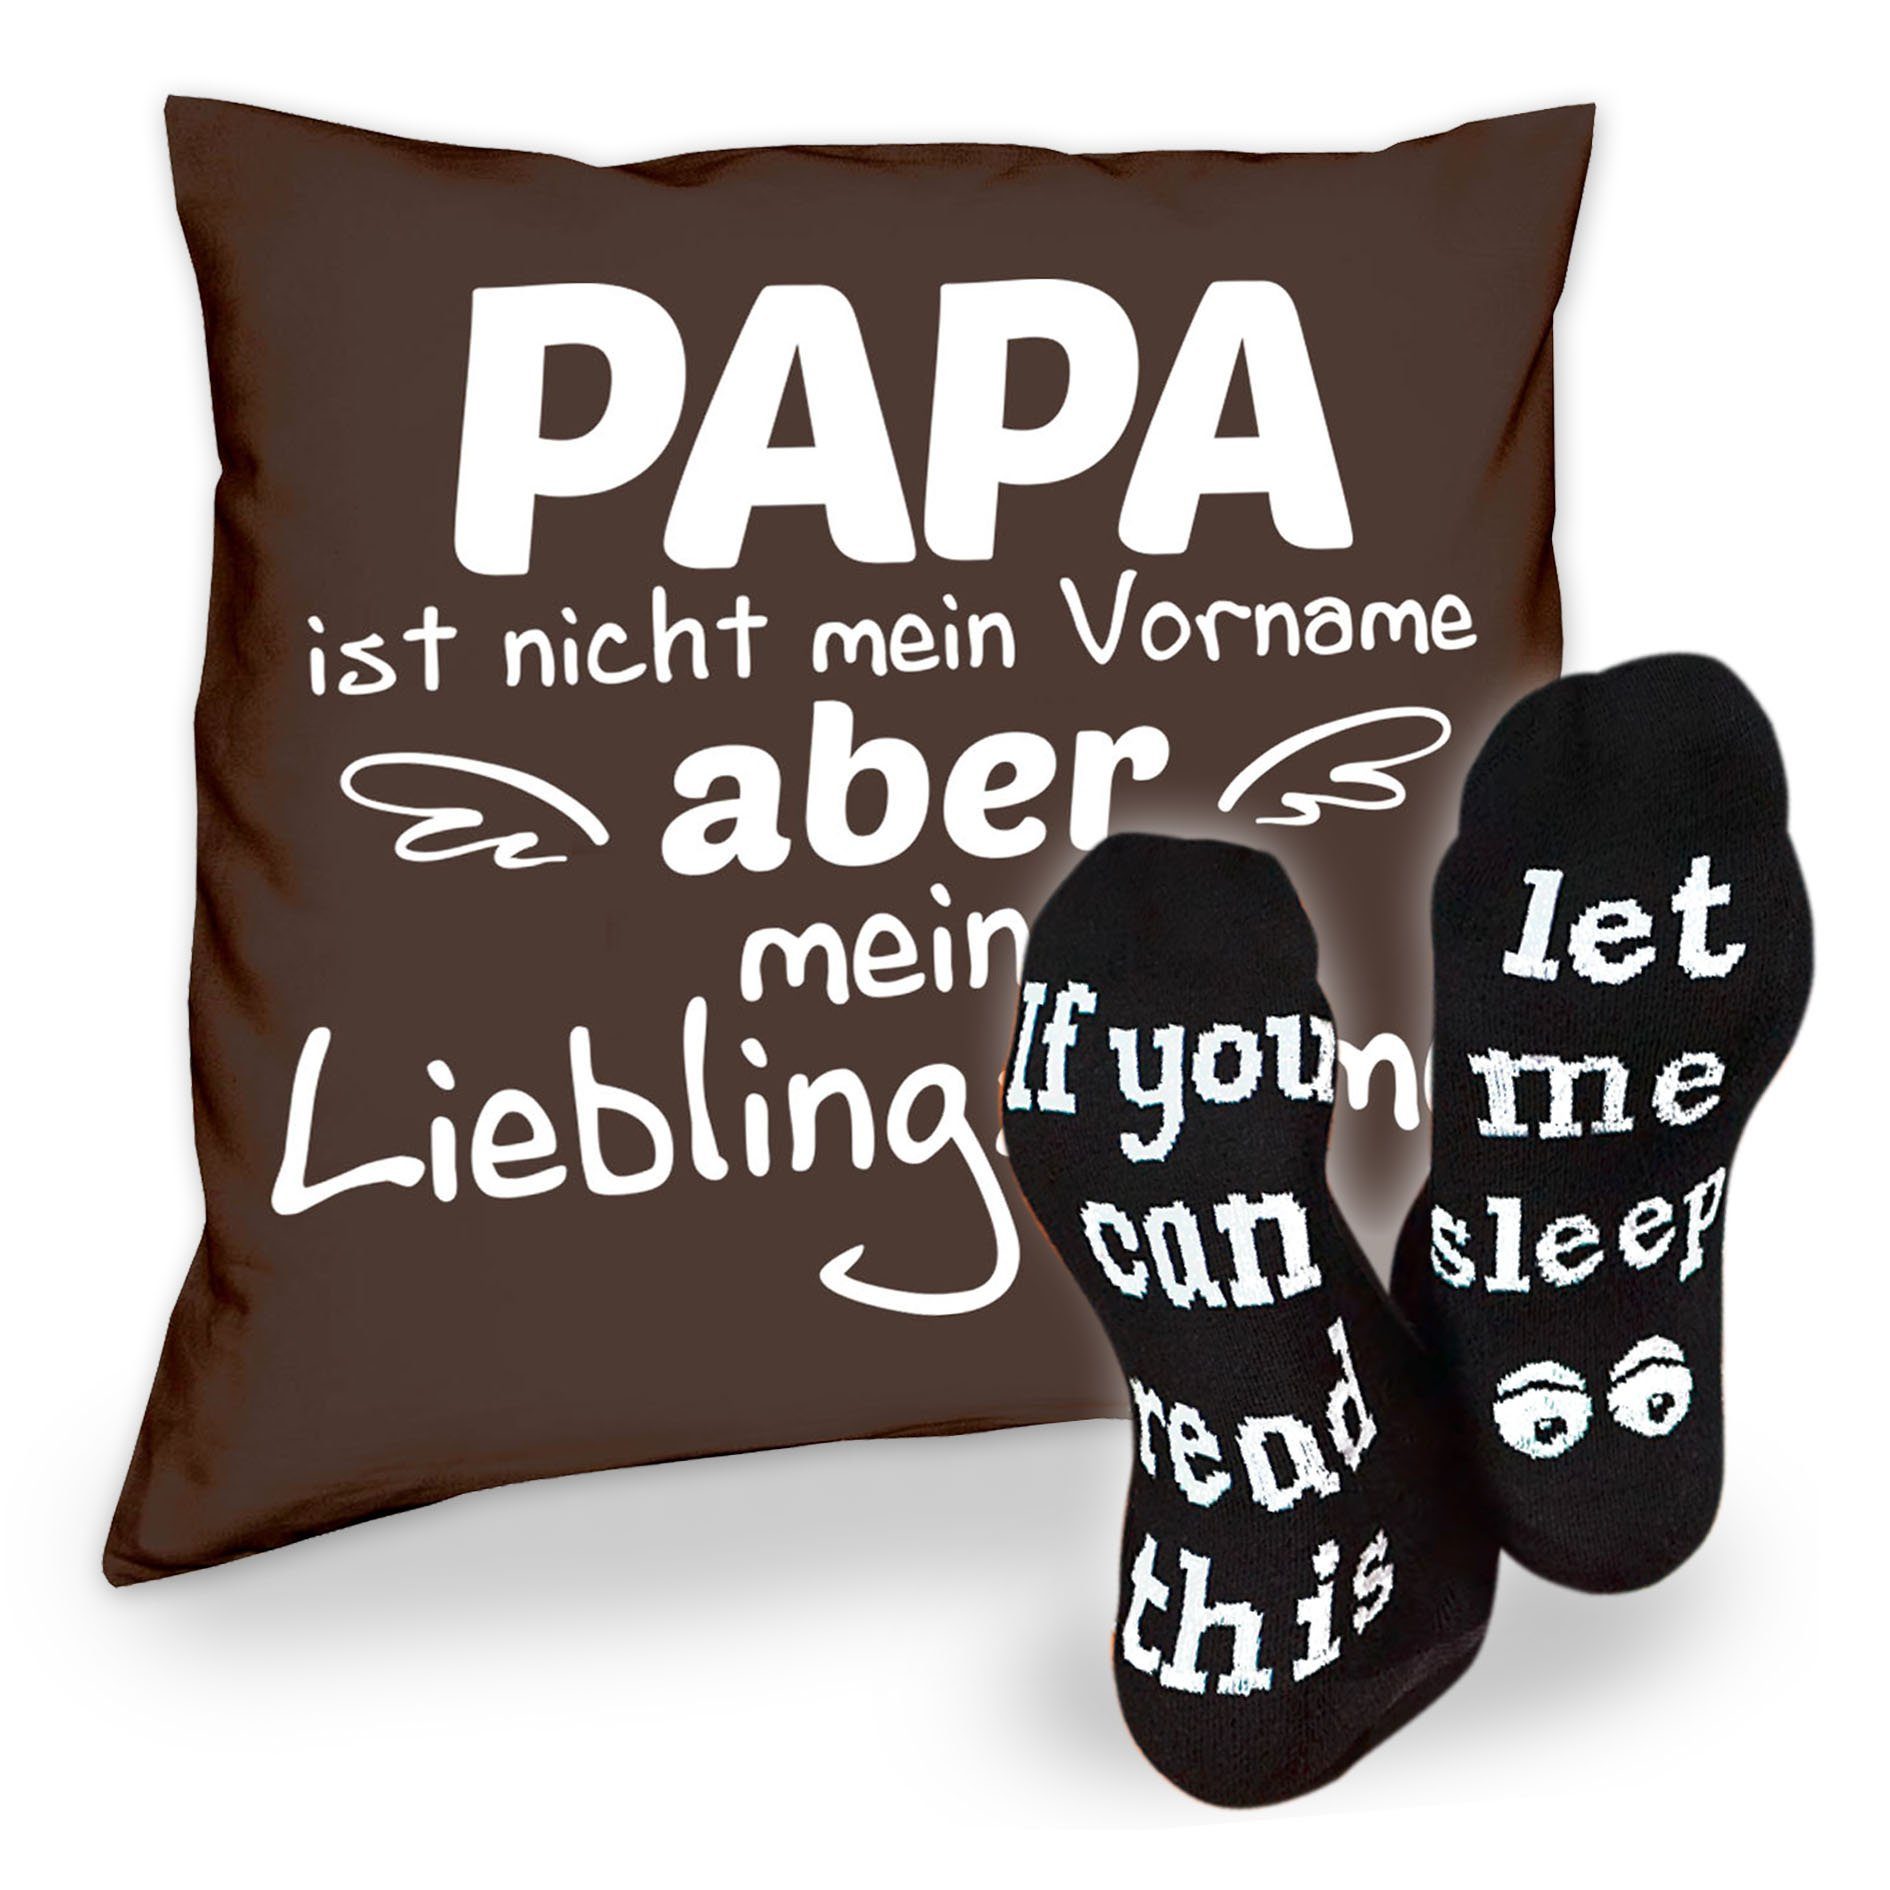 Soreso® Dekokissen Kissen Papa Lieblingsname & Sprüche Socken Sleep, Geschenke Weihnachten Geburtstag Vatertag braun